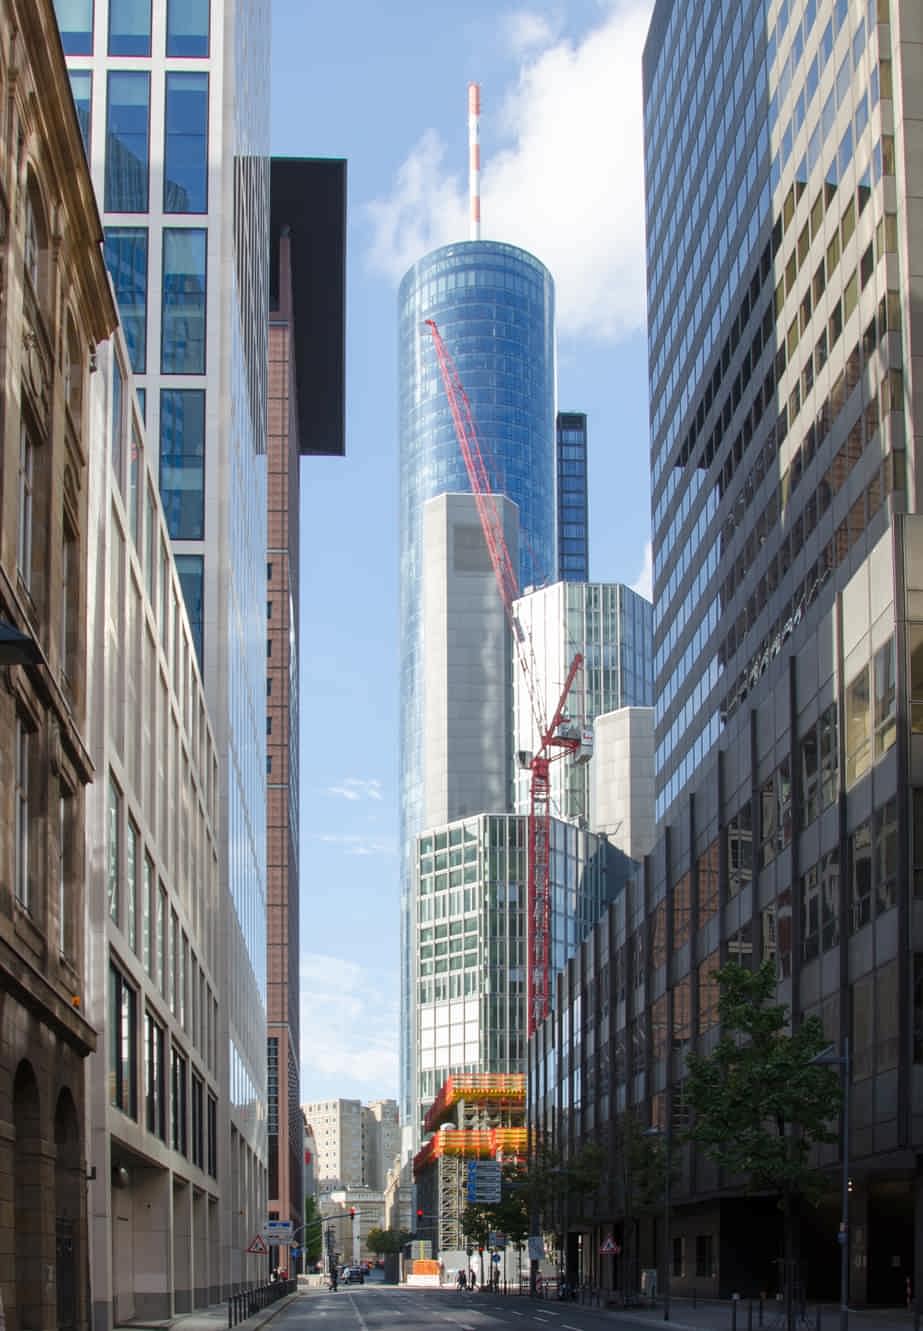 Bild zur Führung. Neue Mainzer Straße mit Main Tower (Aussichtsplattform). Frankfurt, September 2017.